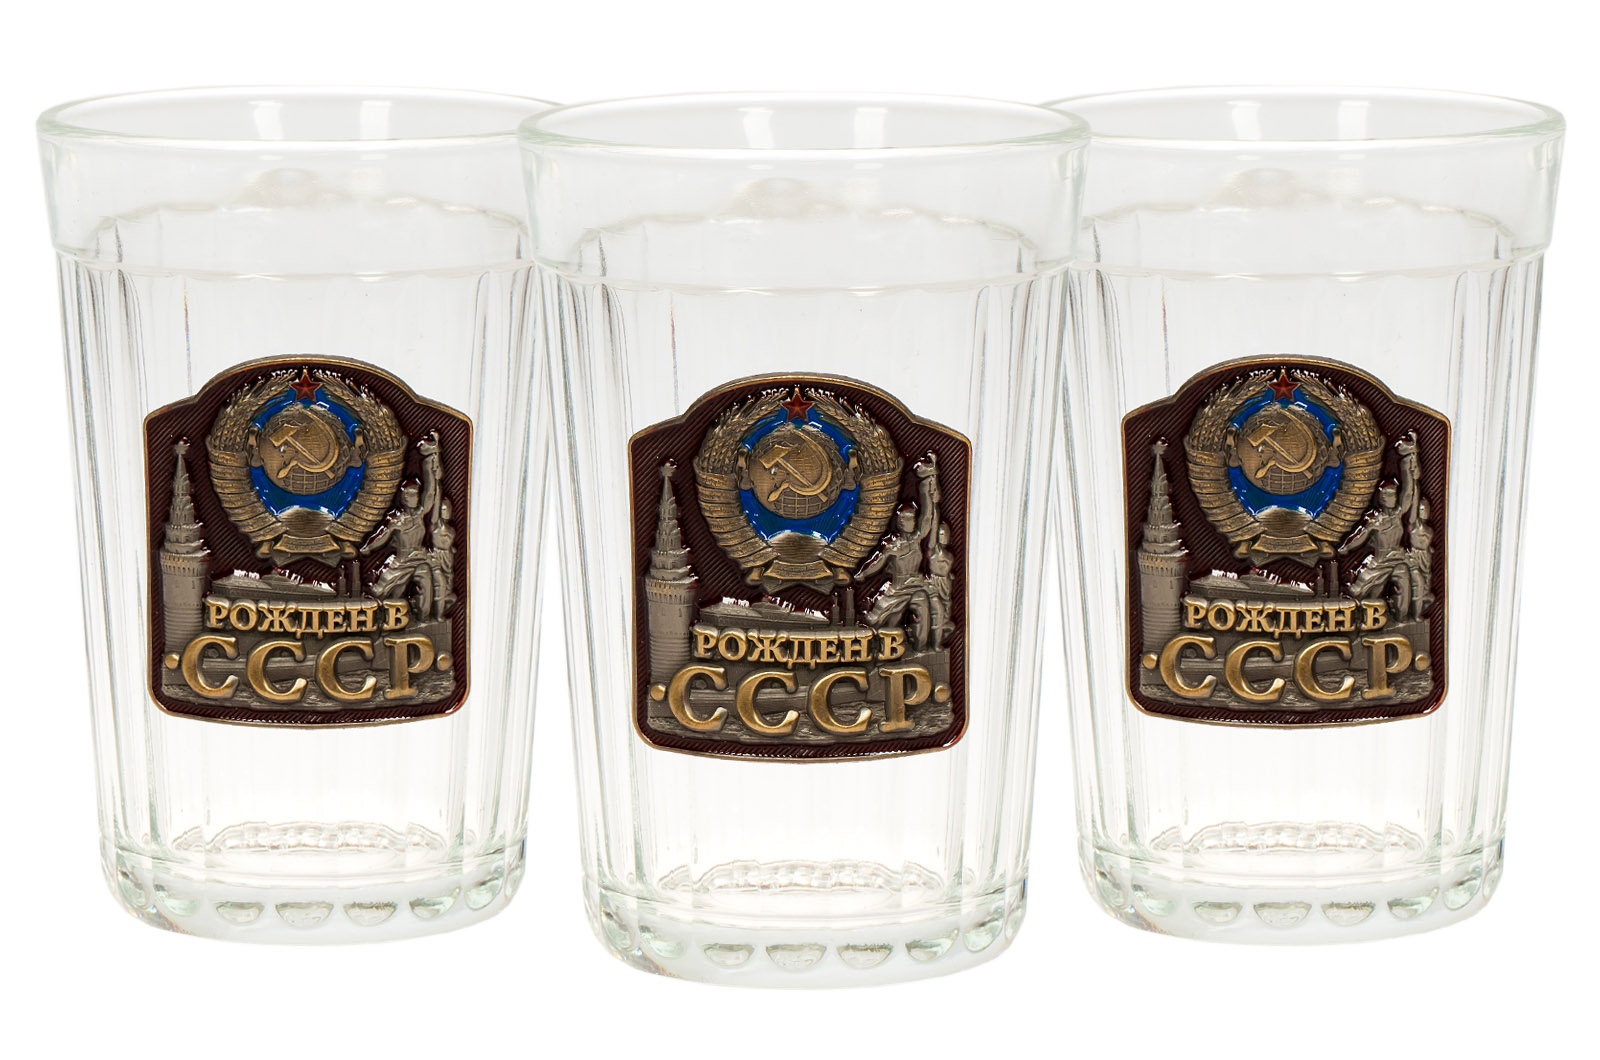 Подарочные стаканы "Рожден в СССР" высокого качества